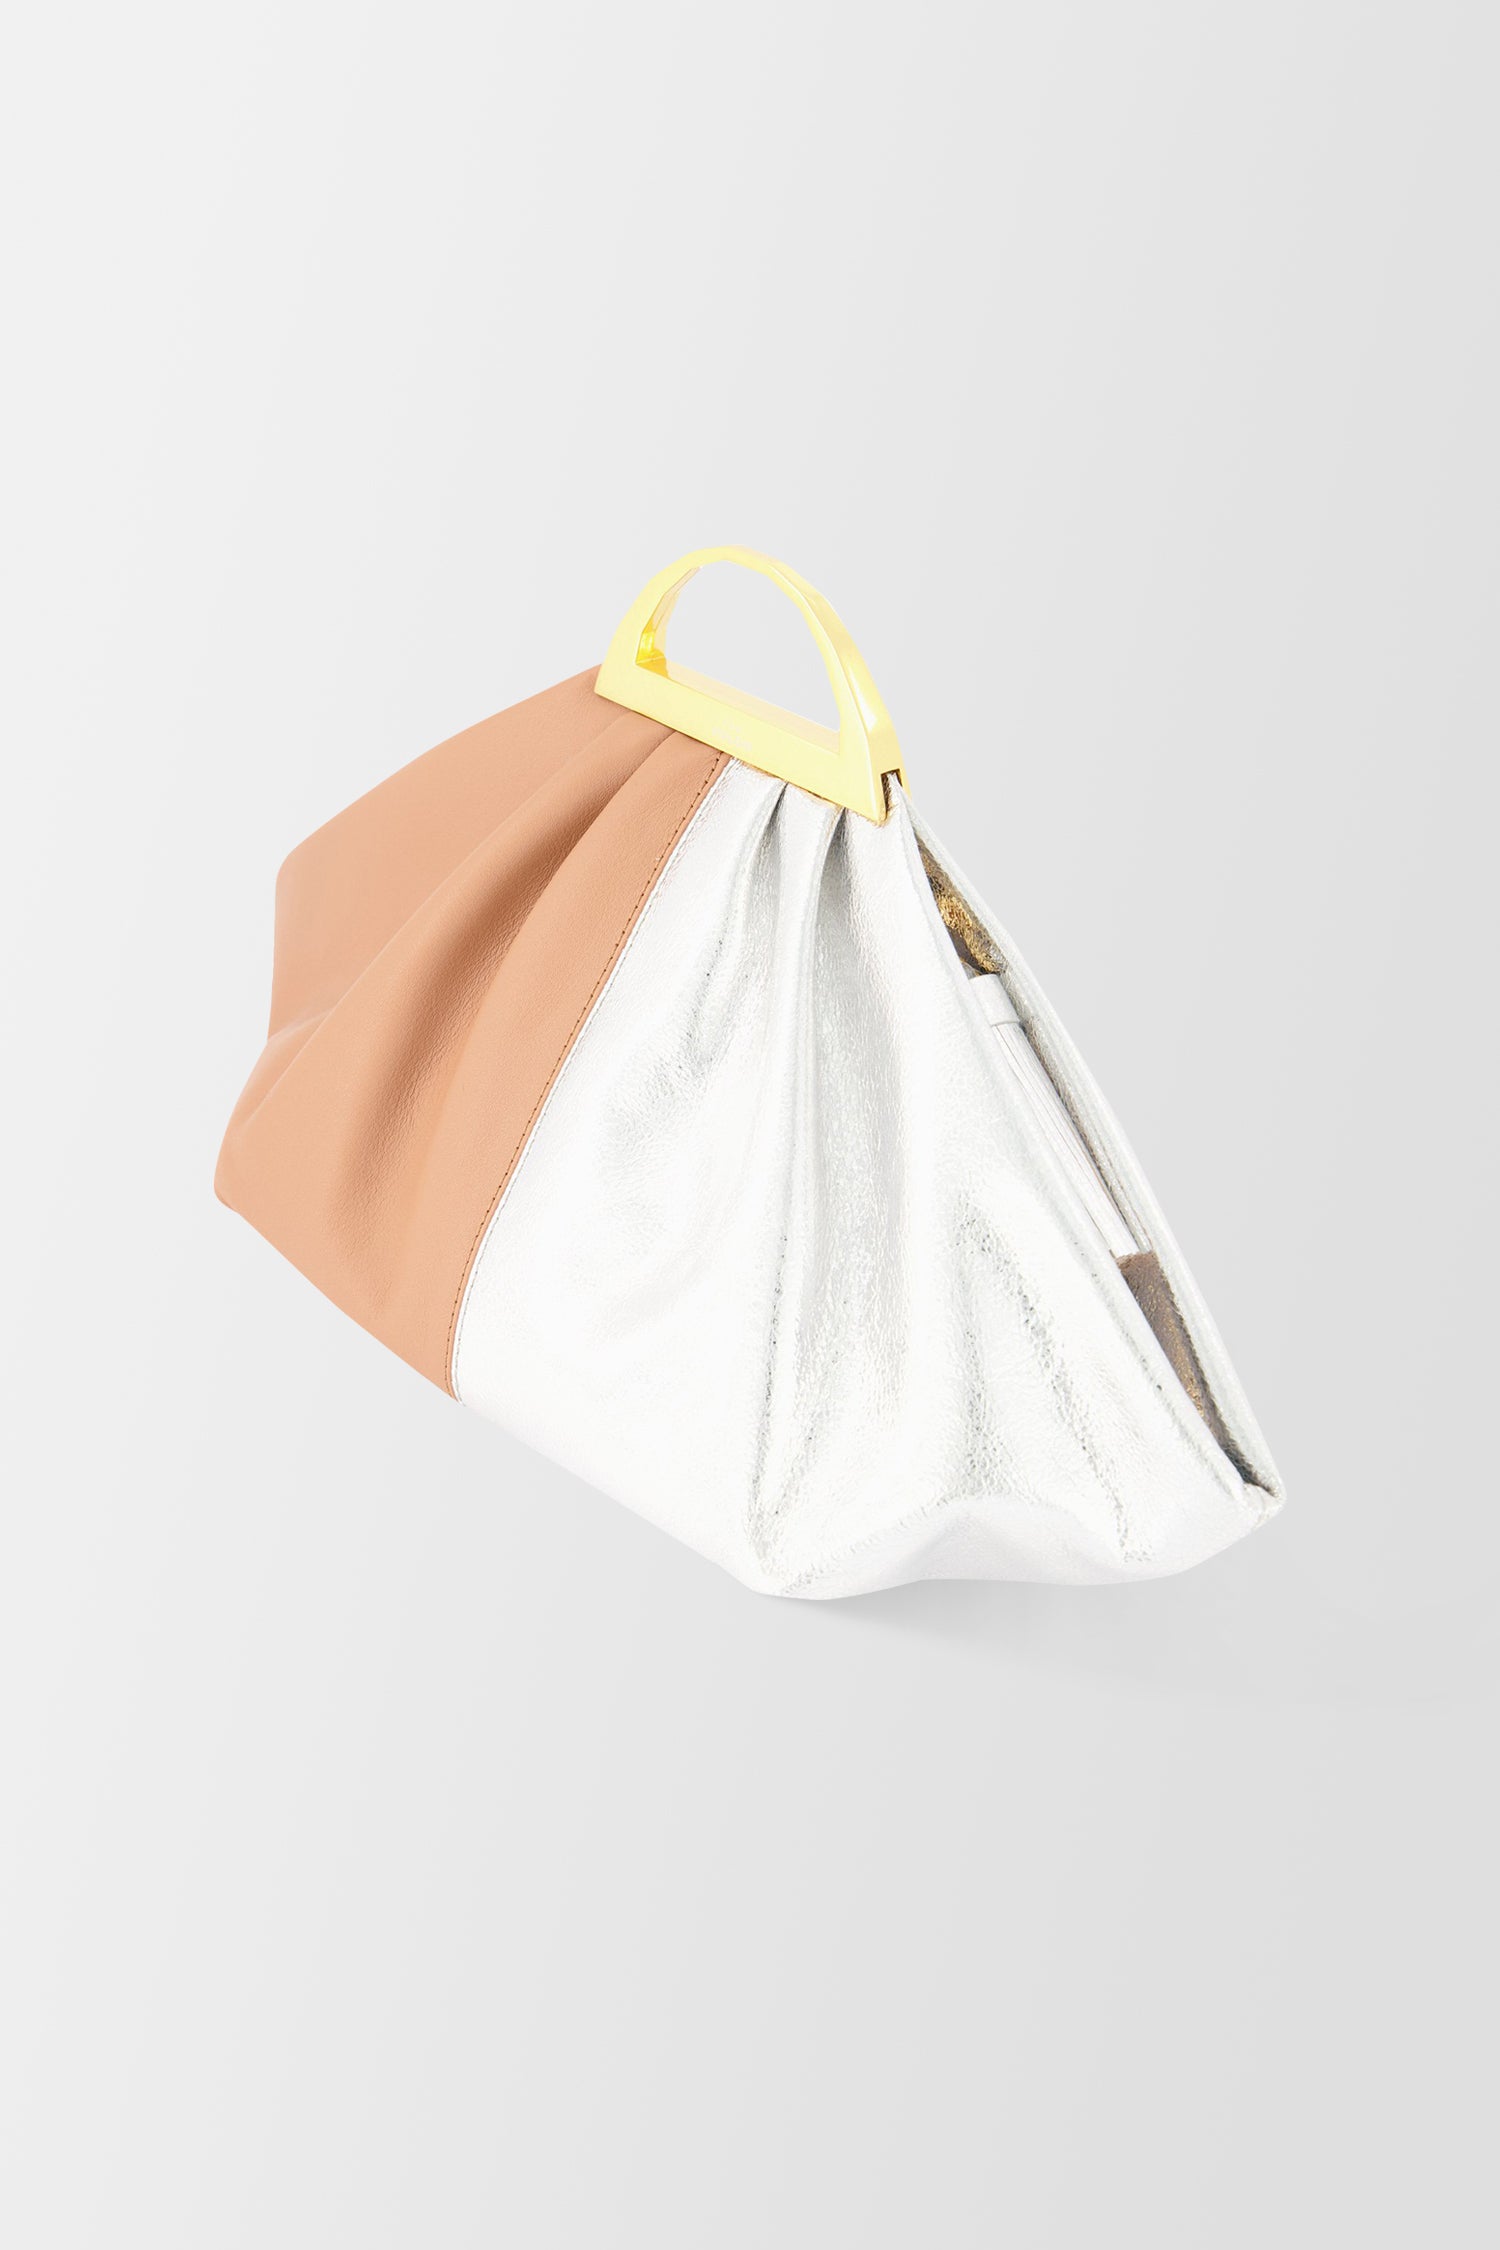 The Volon Maple/Silver Gabi Mini Handbag